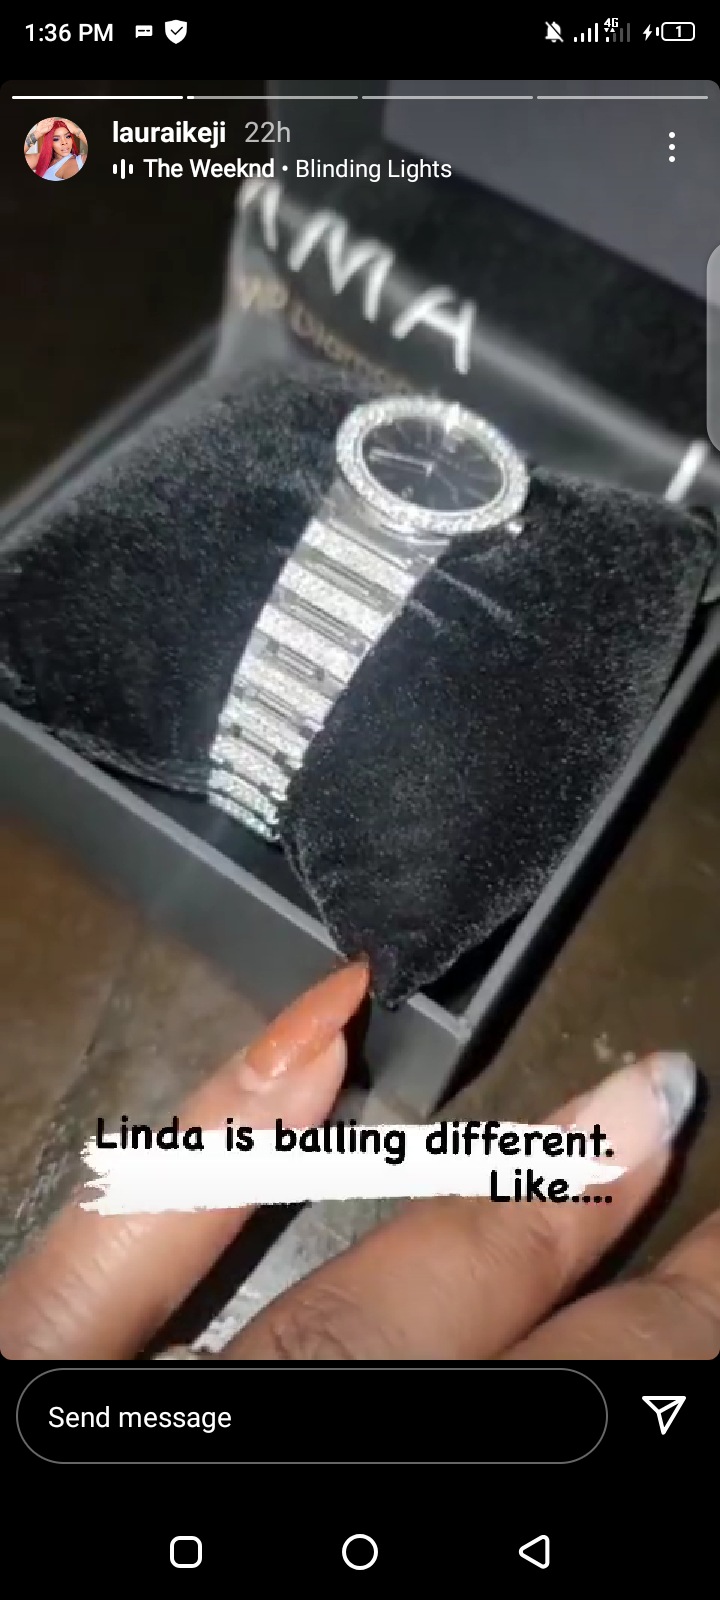 Linda's wristwatch